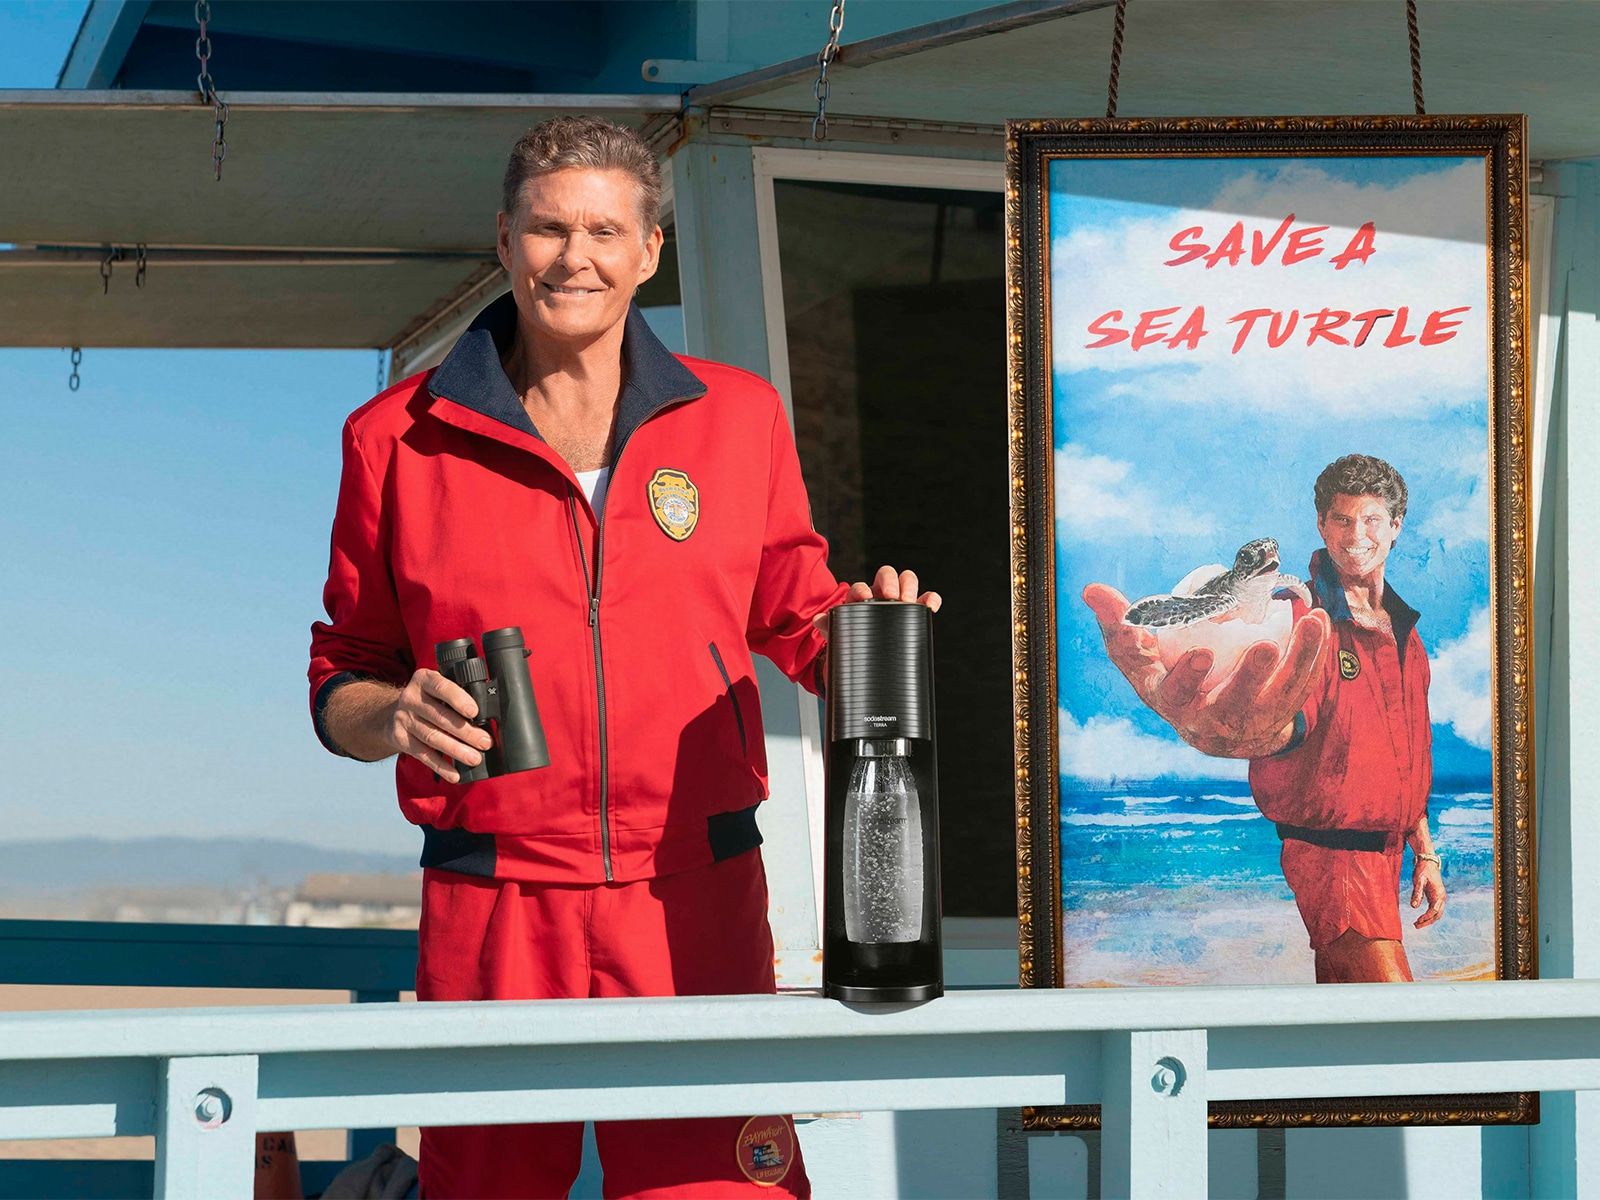 SodaStream salvará un millón de tortugas marinas con el apoyo de Mitch Buchannon